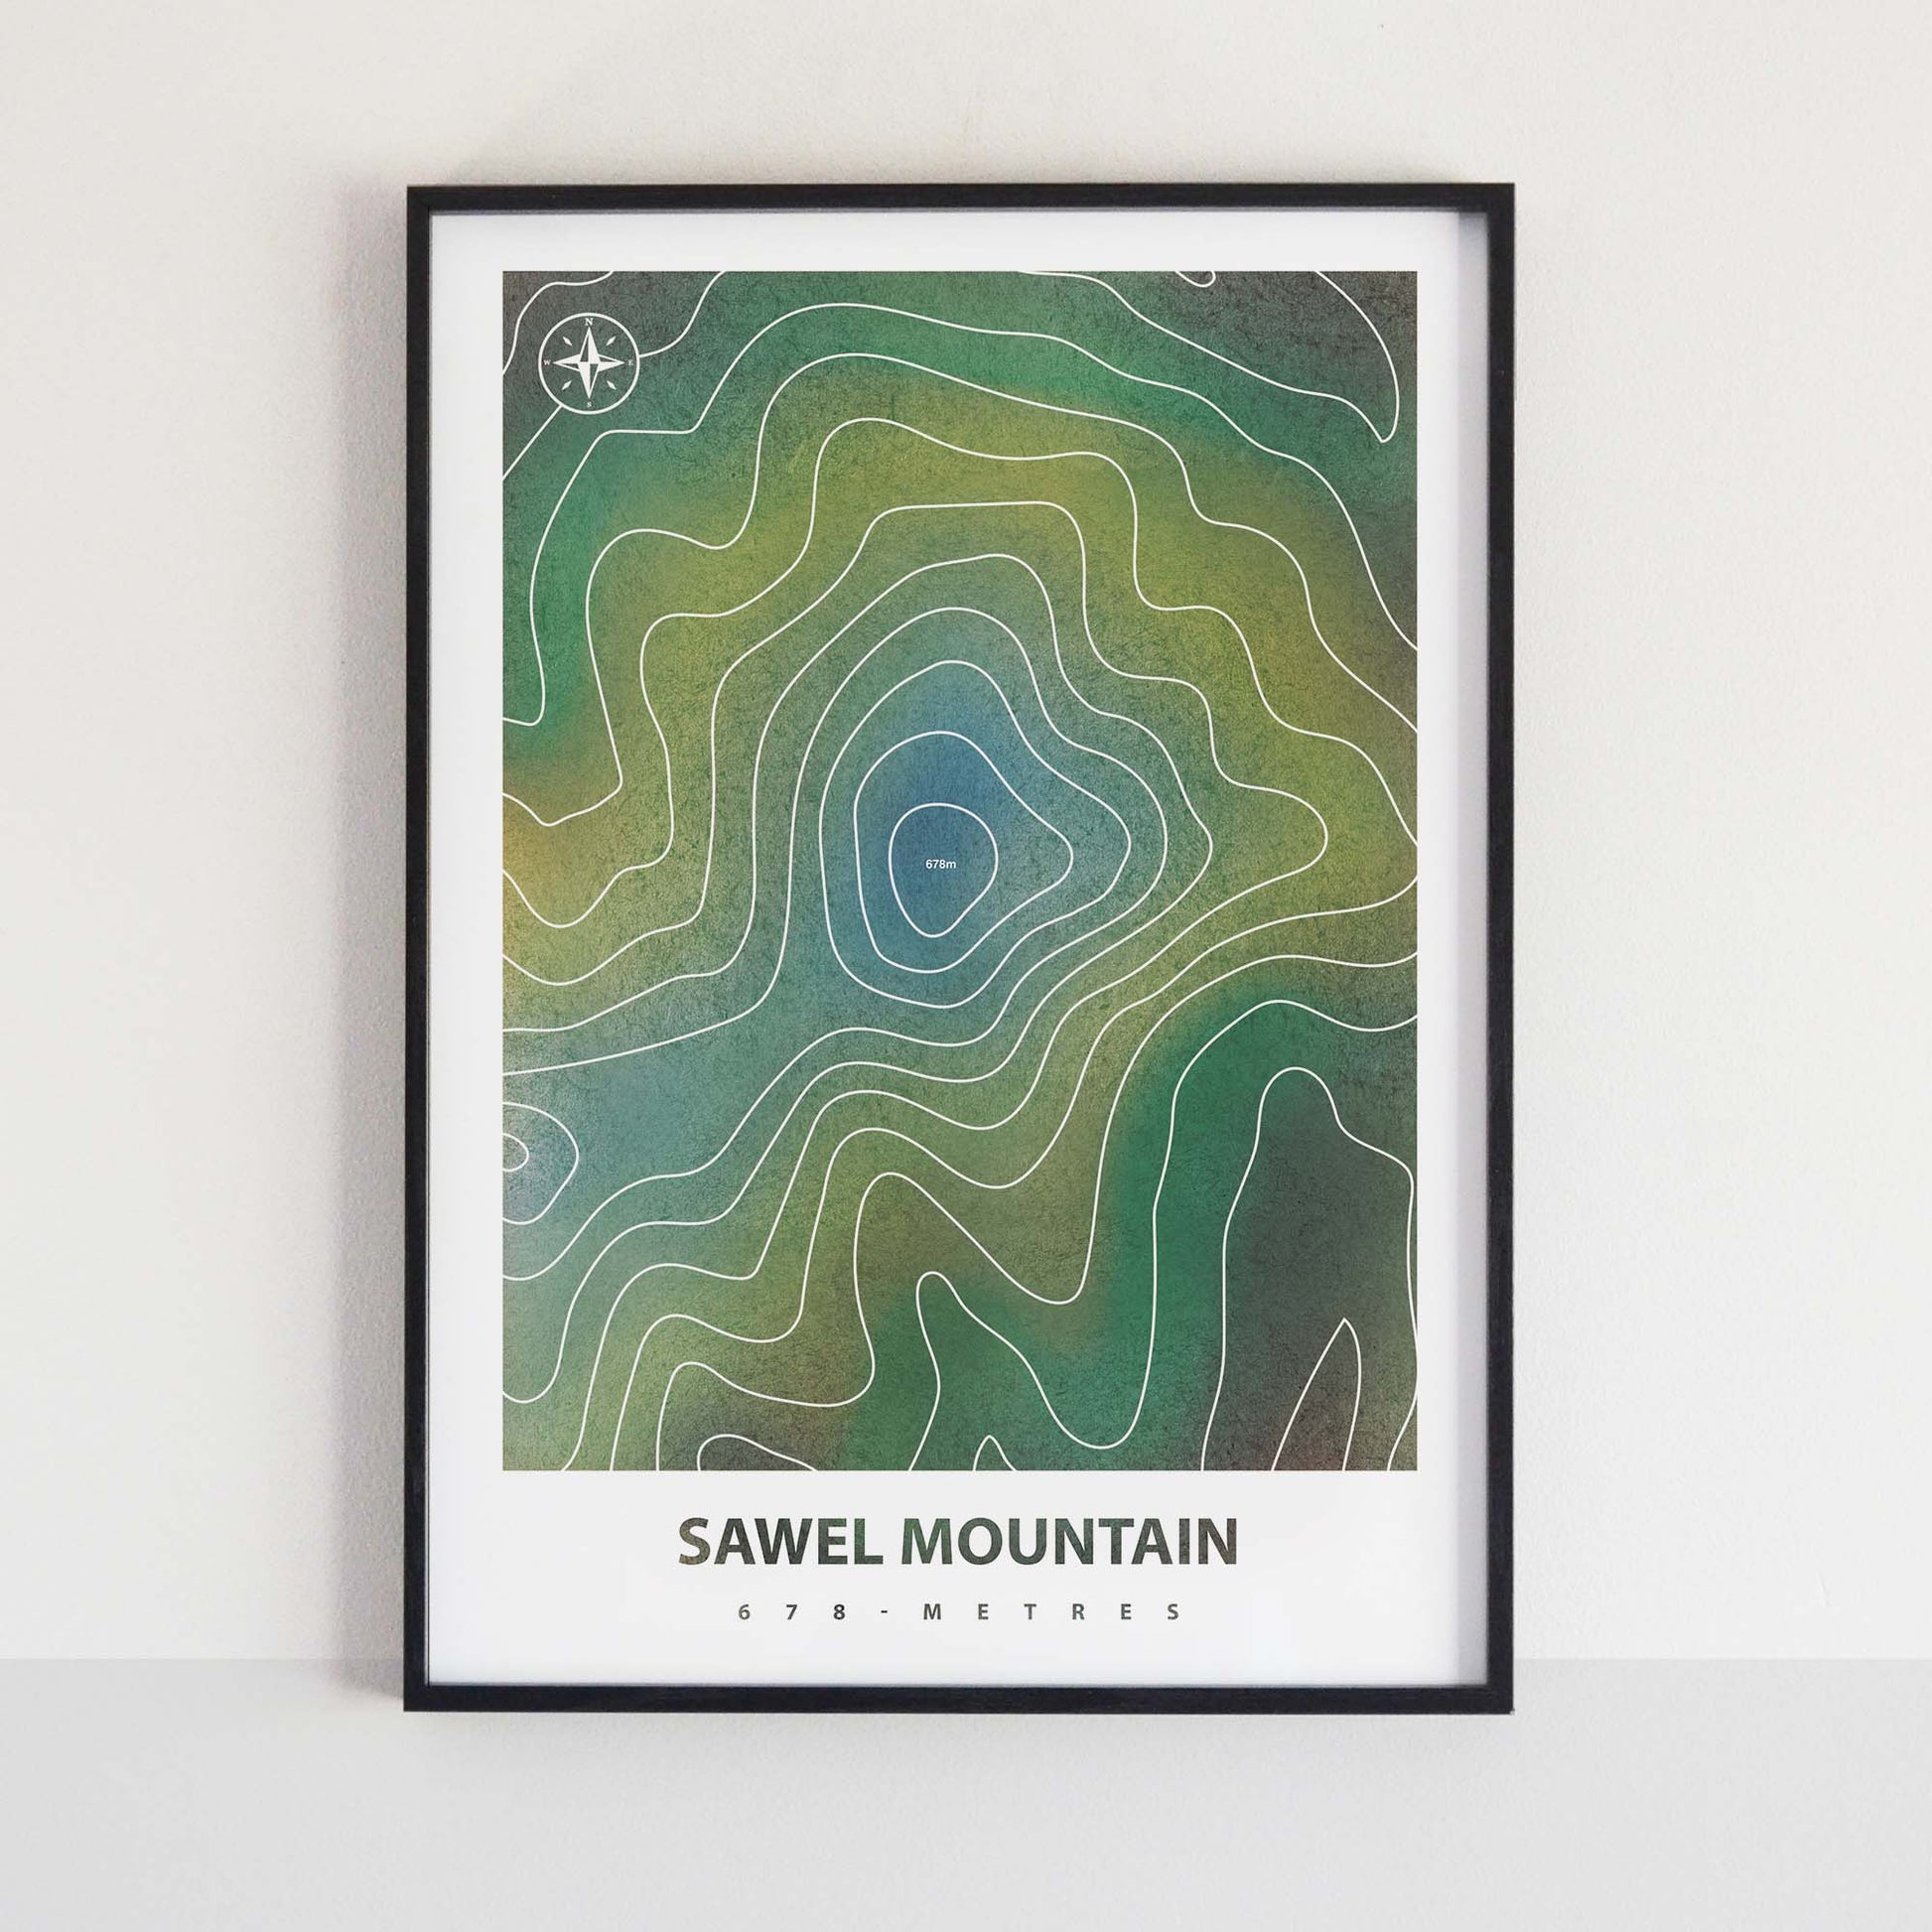 Sawel Mountain Peaks